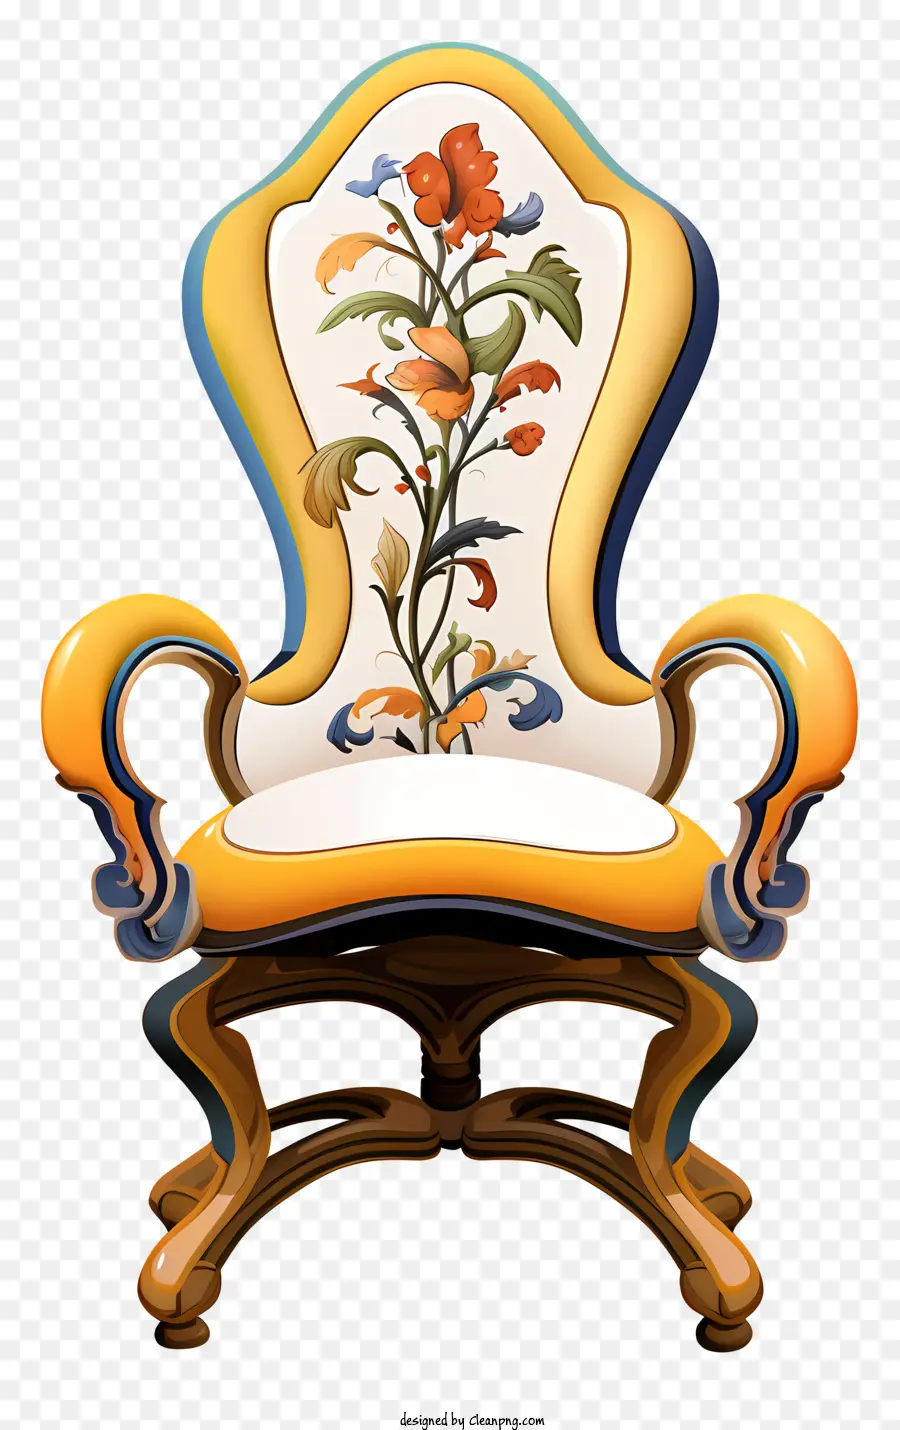 Golden Frame - Goldener Stuhl mit komplizierten Blumenkonstruktionen